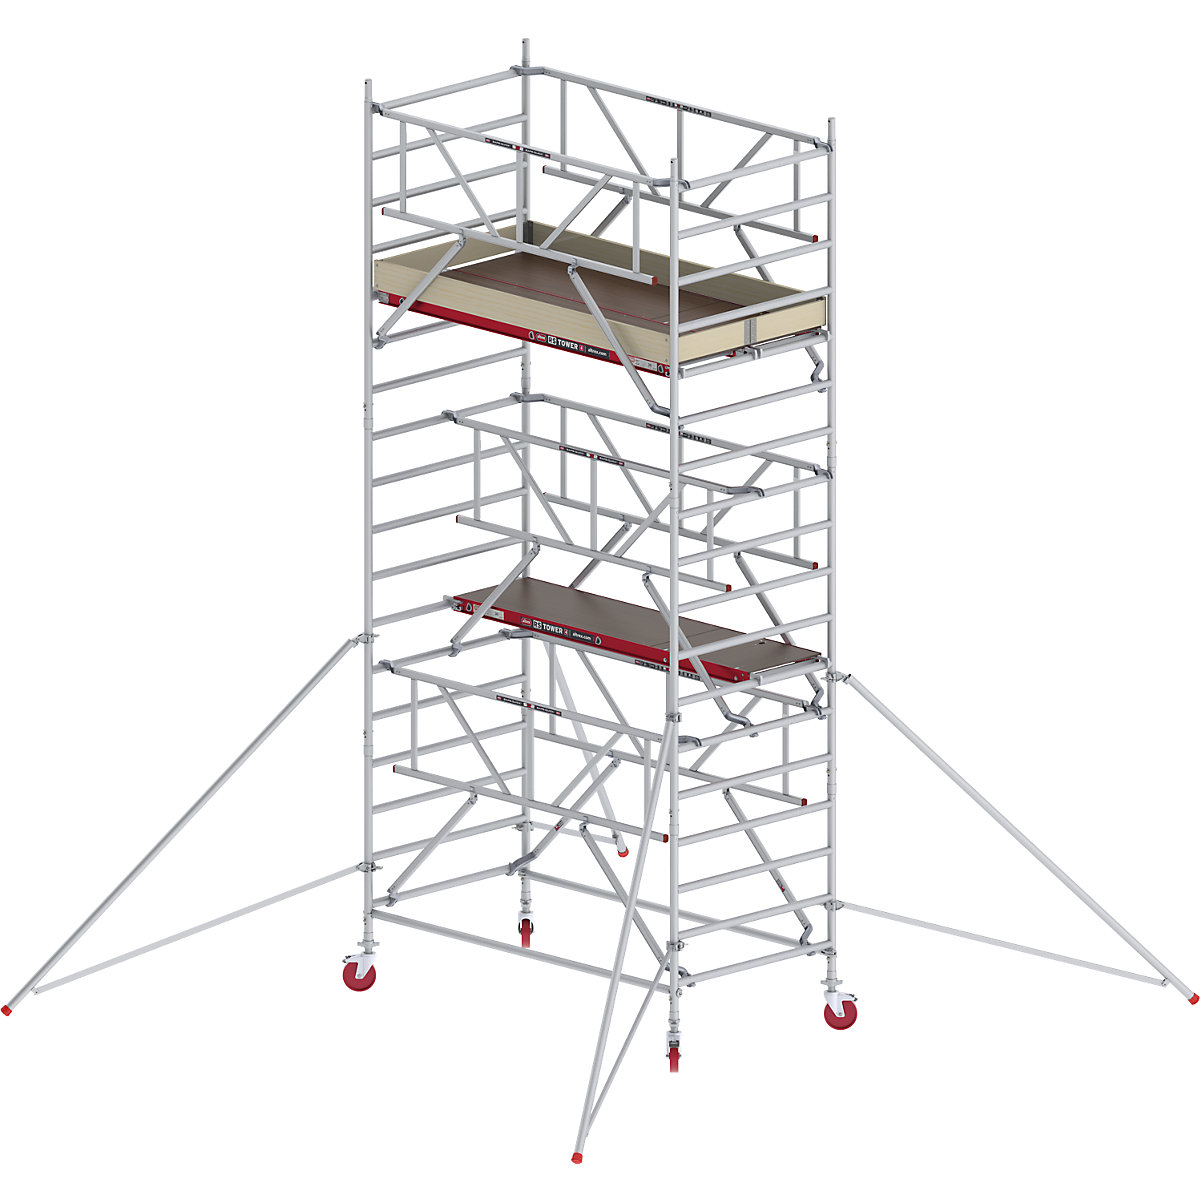 Schelă mobilă RS TOWER 42 lată cu Safe-Quick® – Altrex, platformă din lemn, lungime 2,45 m, înălțime de lucru 6,20 m-2